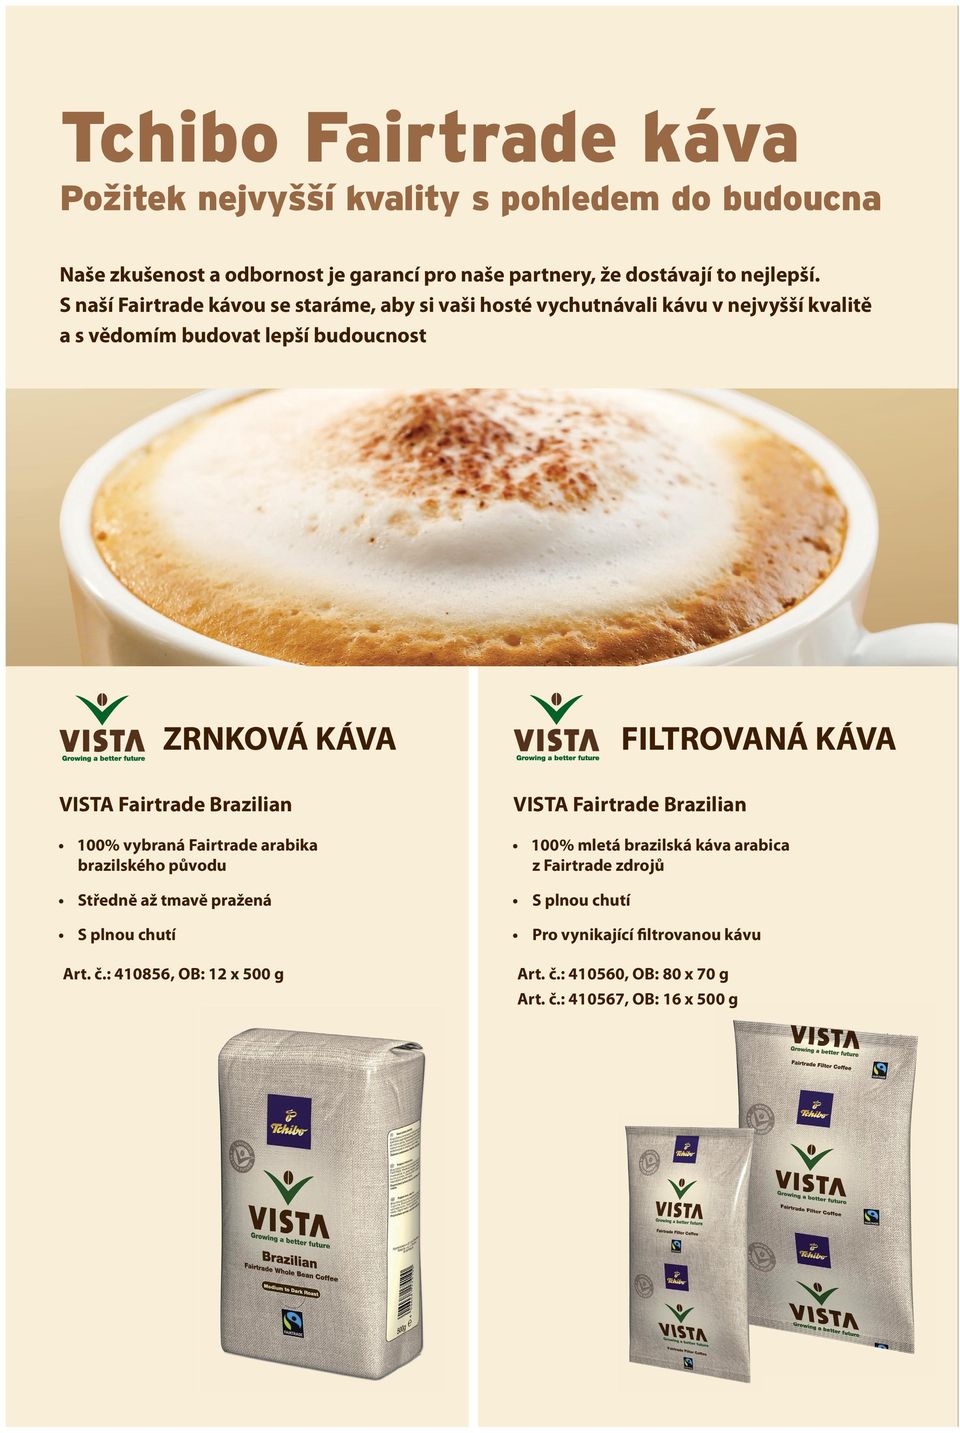 Fairtrade produkty od Tchibo Coffee Service: Trvale udržitelné certifikované pečetí Fairtrade, známé mezi spotřebiteli Důvěryhodné harmonický koncept od pěstování po komunikaci s koncovým zákazníkem